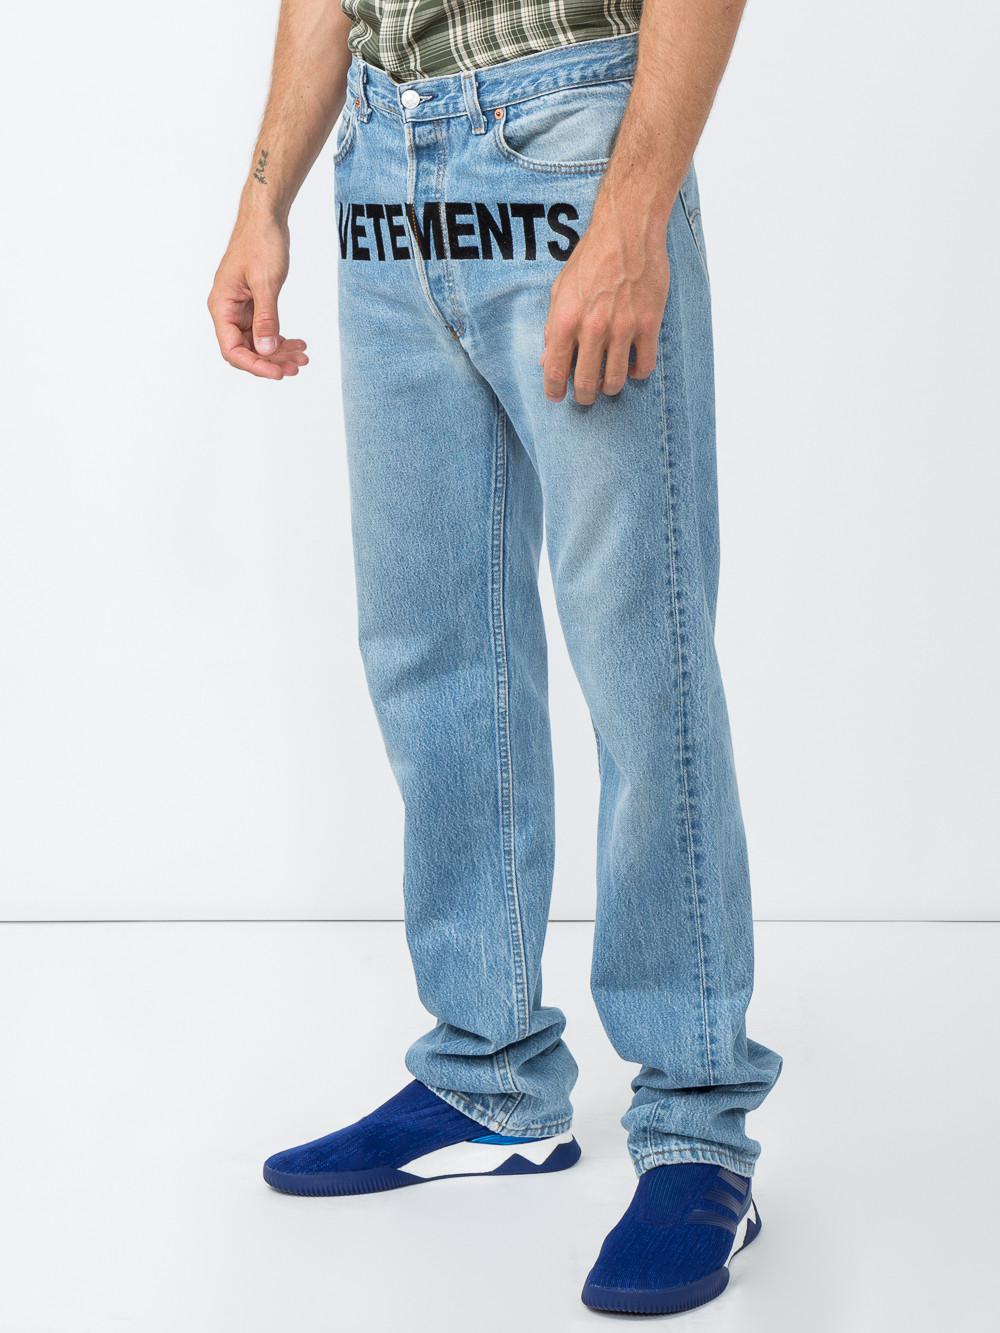 vetements levis logo jeans